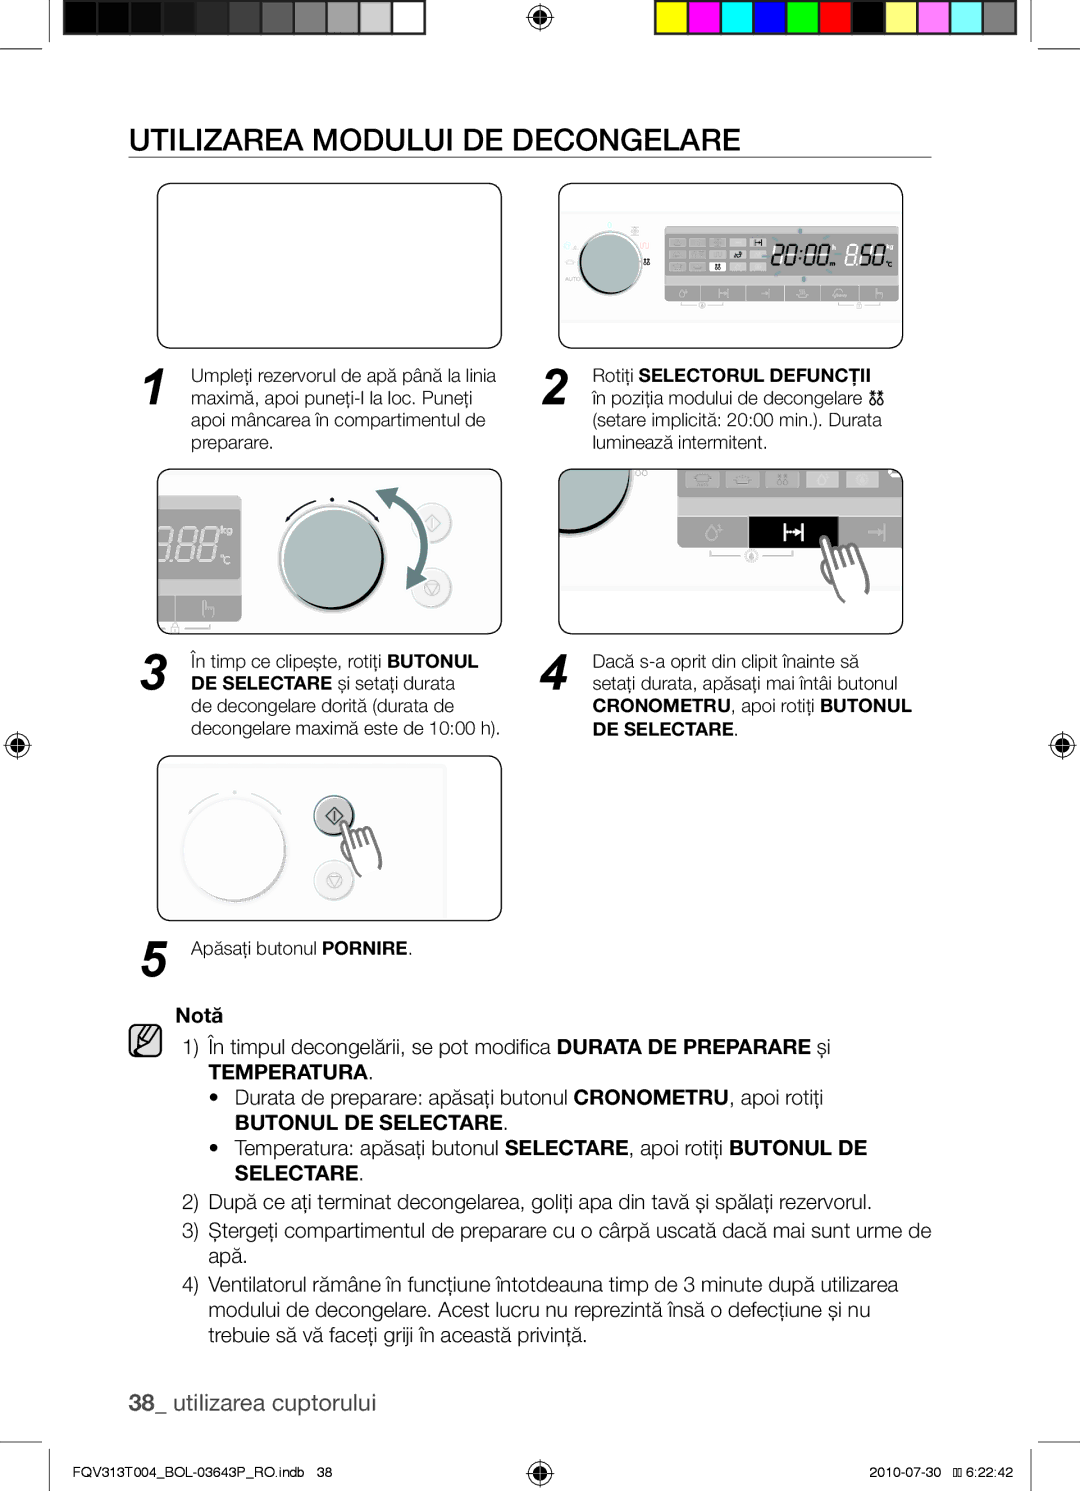 Samsung FQV313T004/BOL manual Utilizarea modului de decongelare, Rotiţi Selectorul Defuncţii 